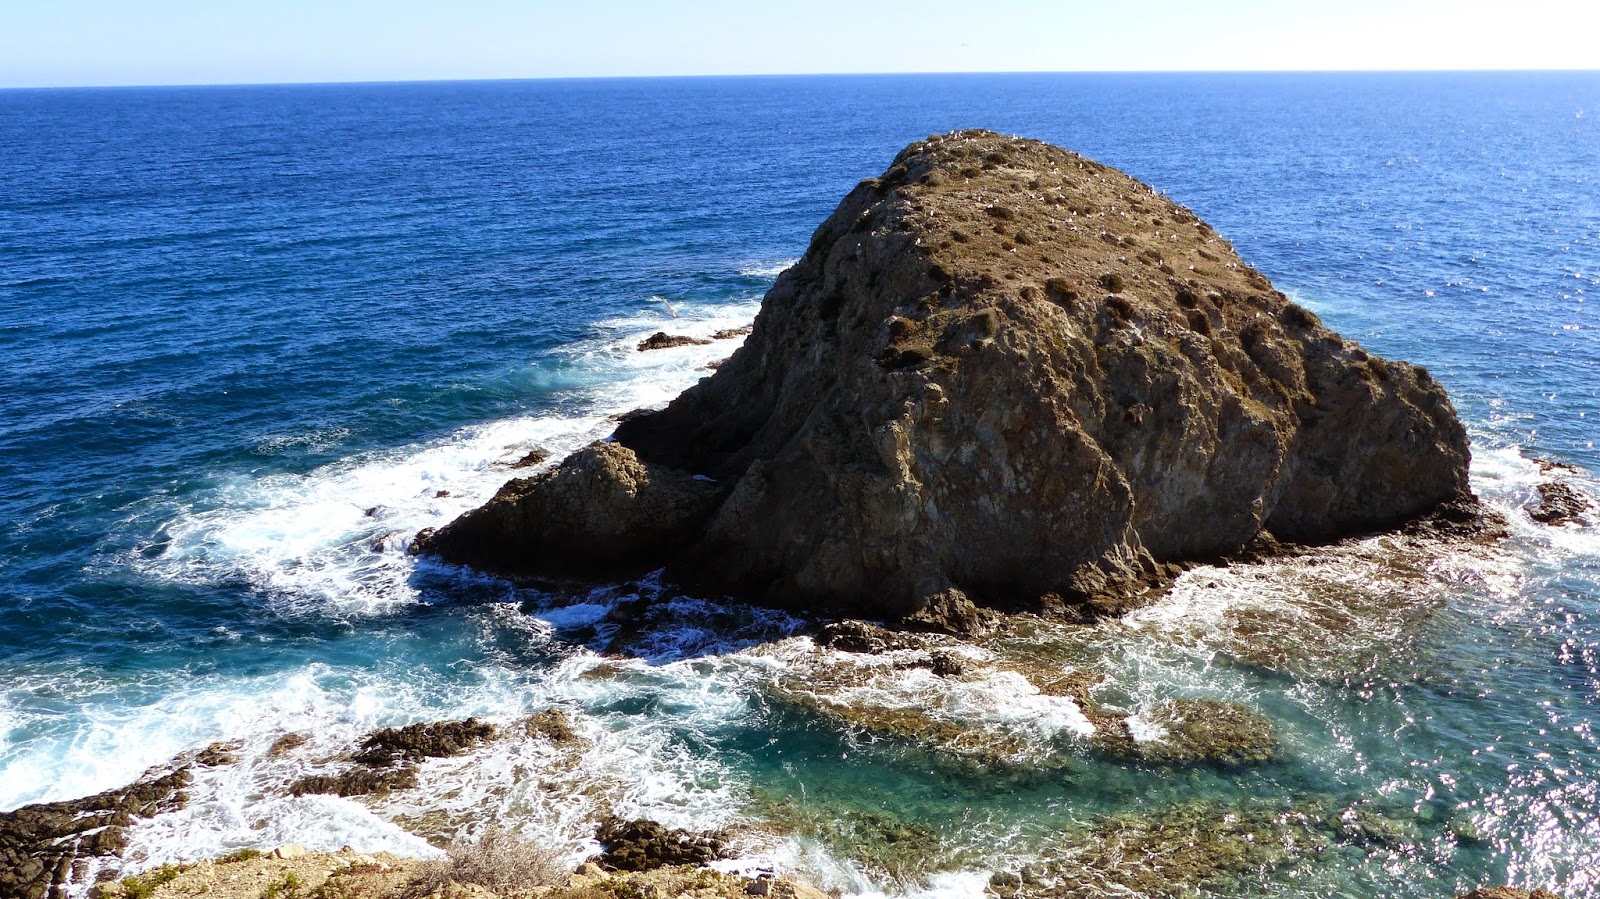 The rocky outcrop at La Isleta